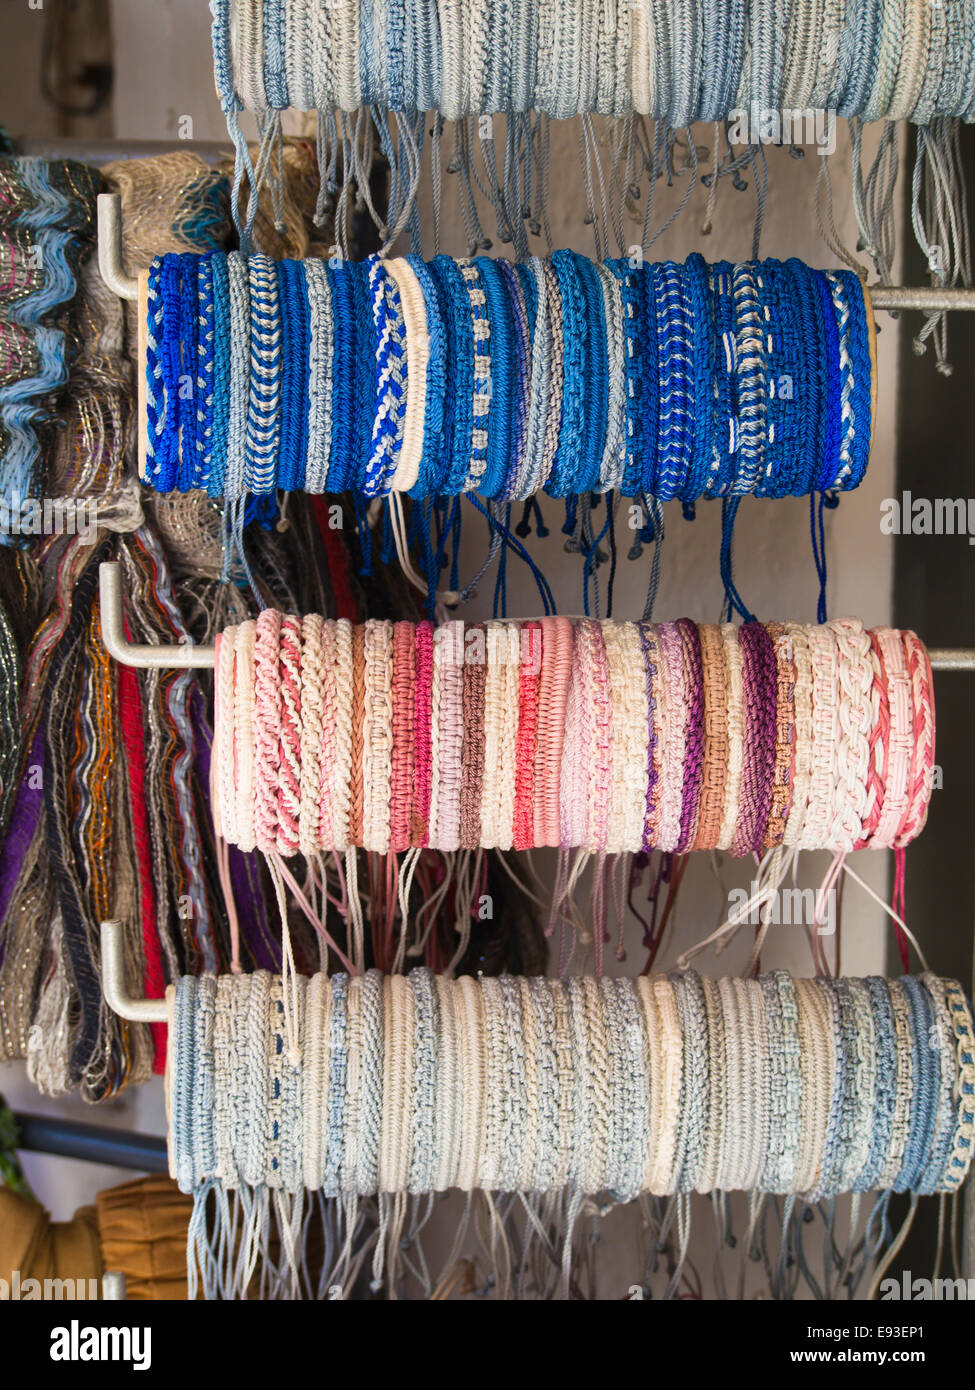 Affichage des bracelets textiles colorés dans une boutique touristique dans Phytagorion sur l'île de Samos en Grèce Banque D'Images